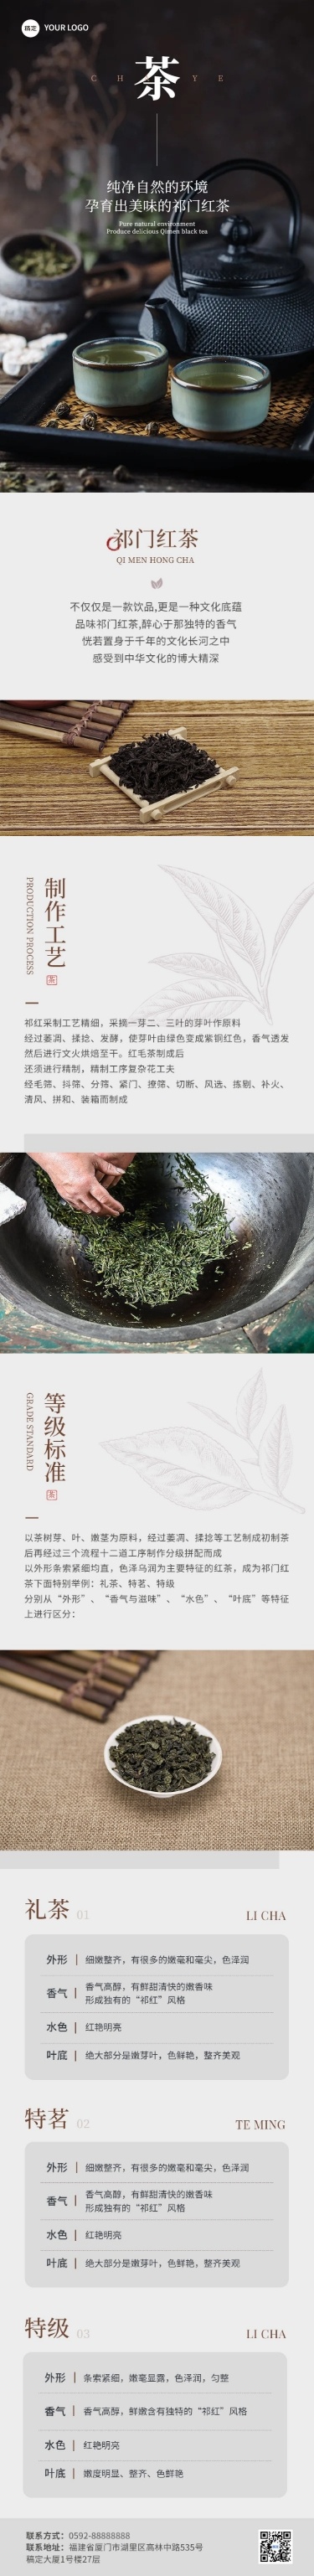 茶叶营销卖货微信公众号文章长图